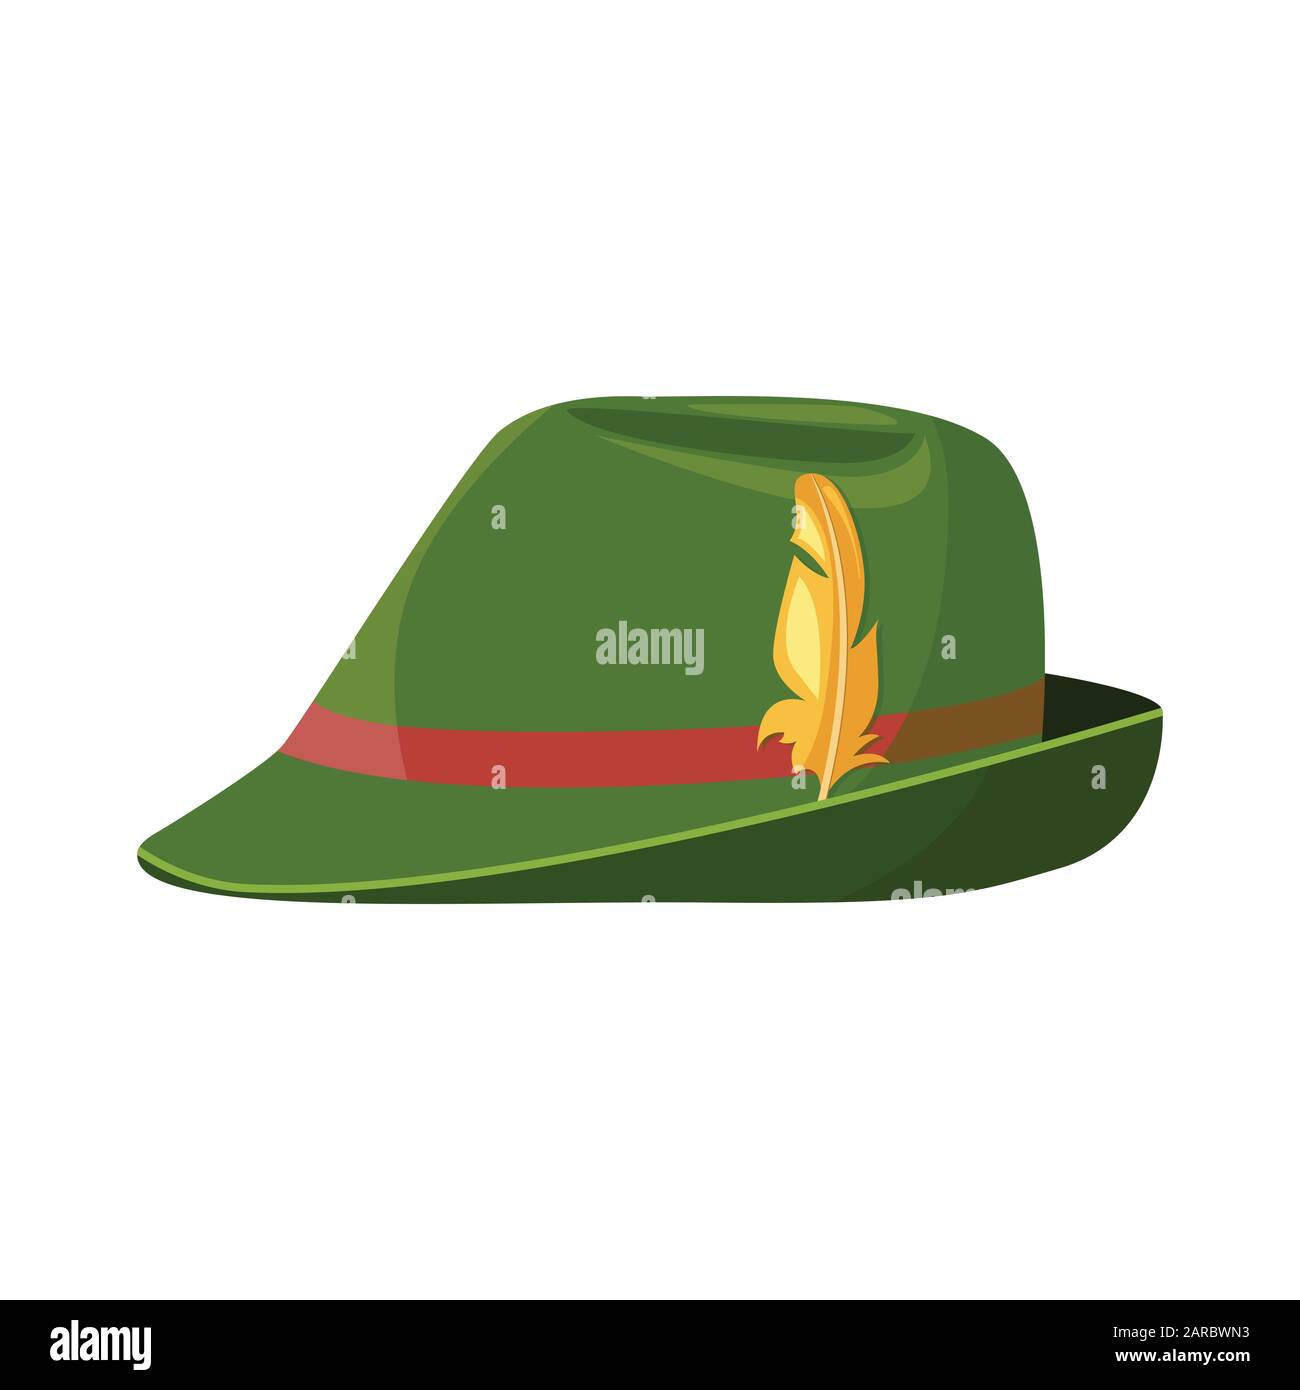 Cappello con piuma immagini e fotografie stock ad alta risoluzione - Alamy